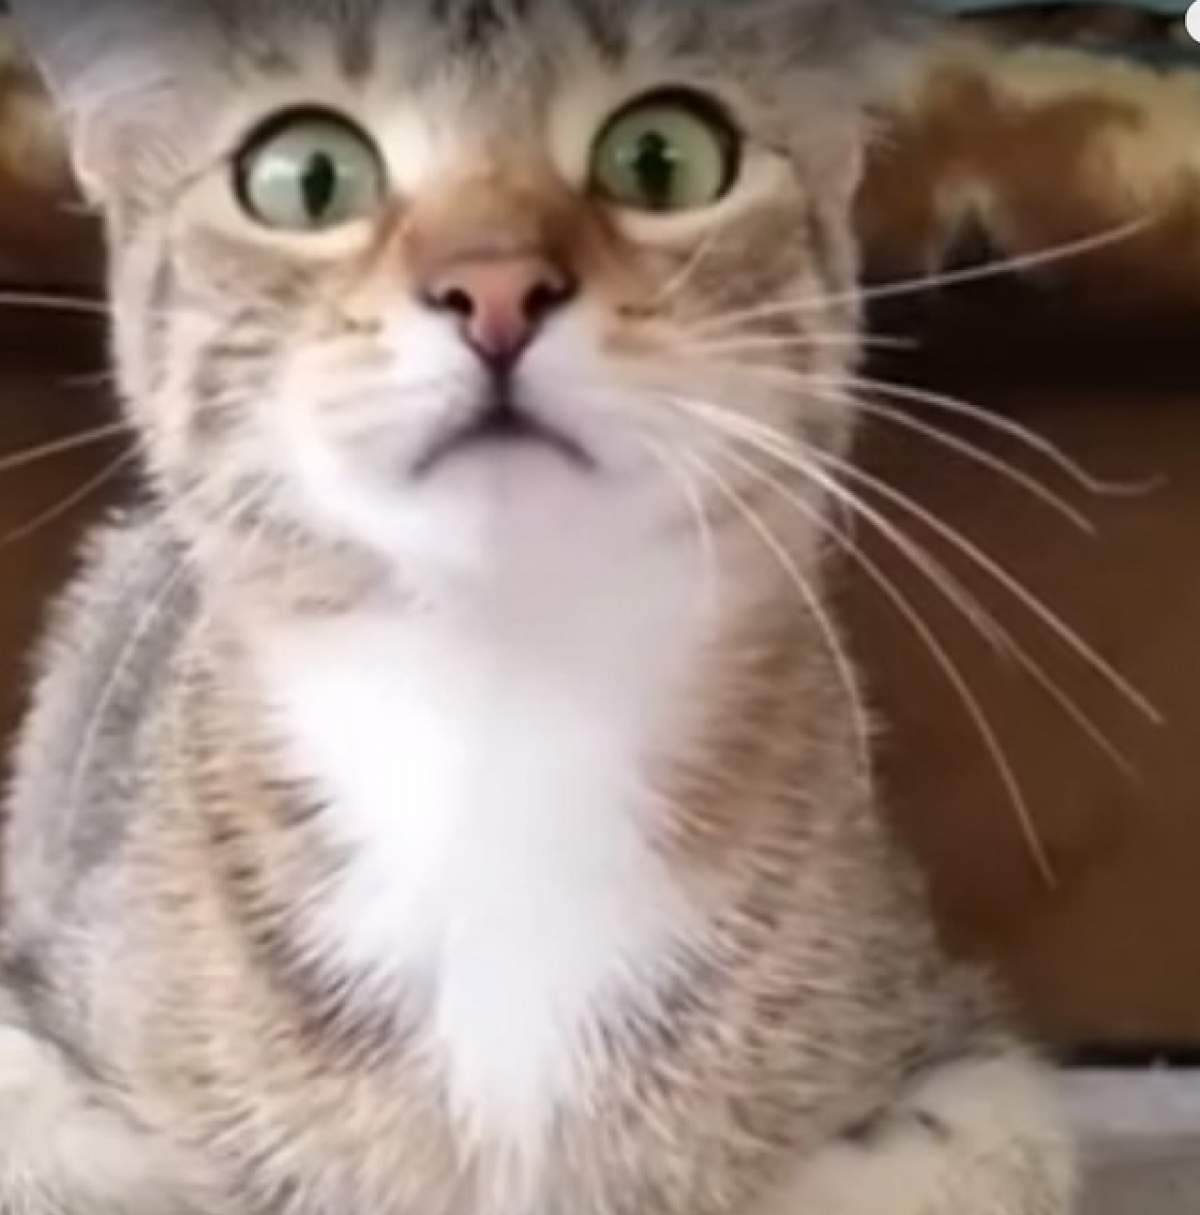 VIDEO / Reacţia incredibilă a unei pisici care se uită la filme de groază! Imaginile sunt fabuloase